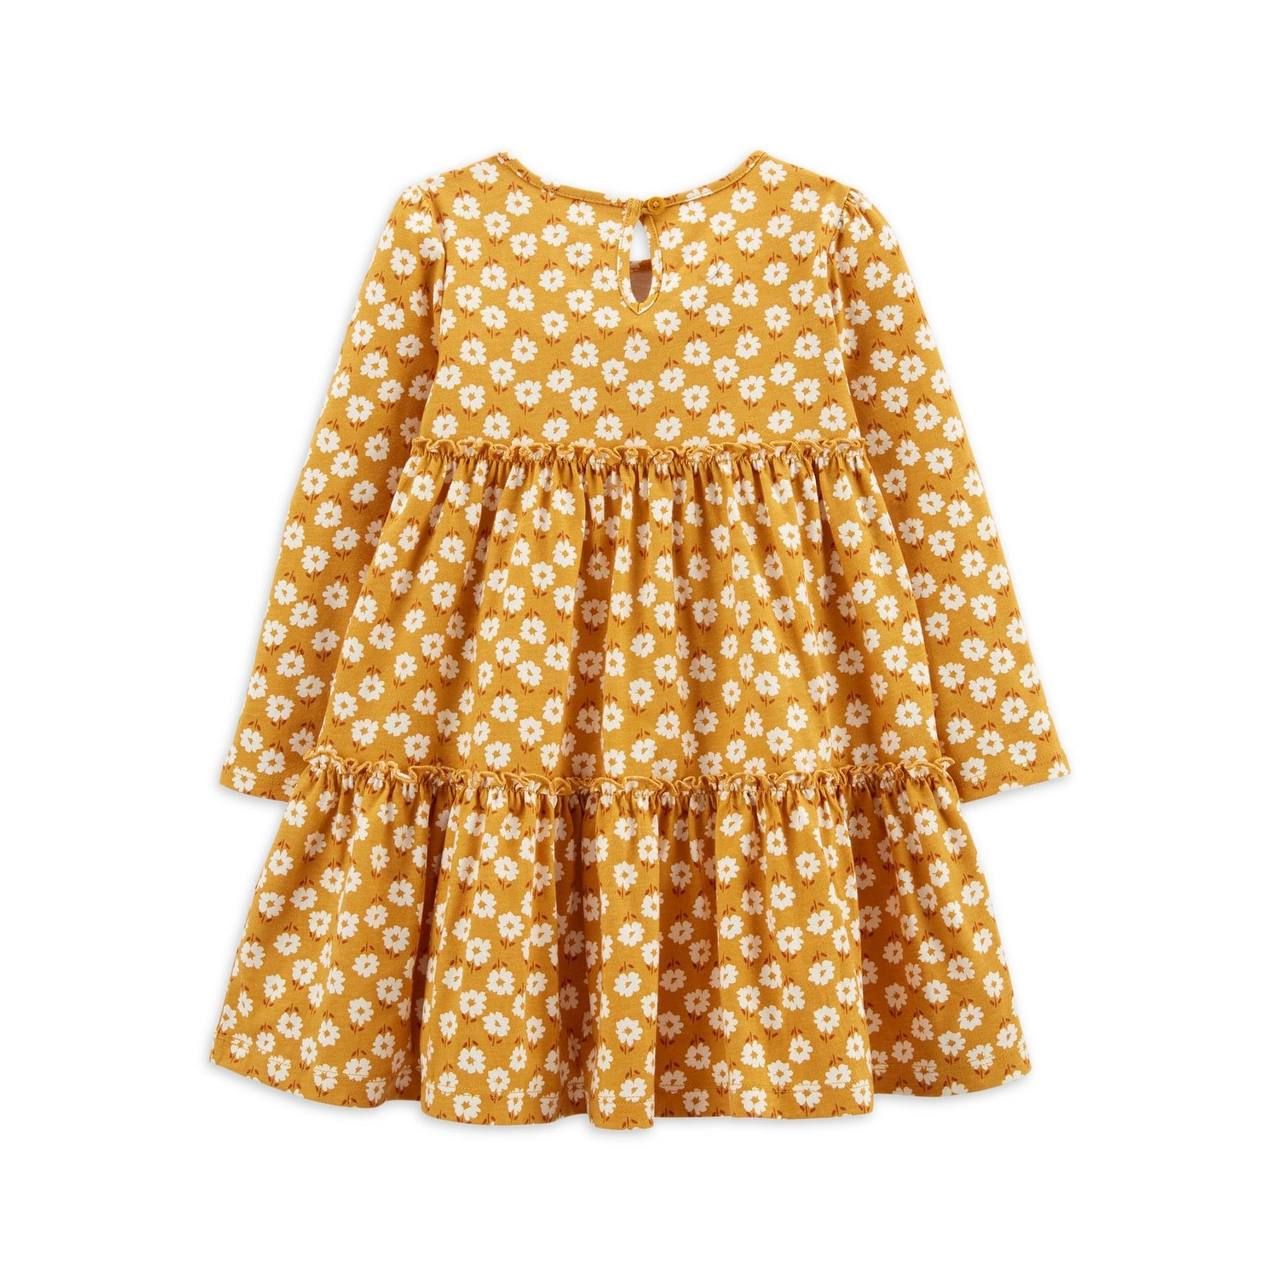  [13-16kg] Đầm Thun Cotton Tay Dài Bé Gái Cter - Vàng Đậm Hoa Trắng 